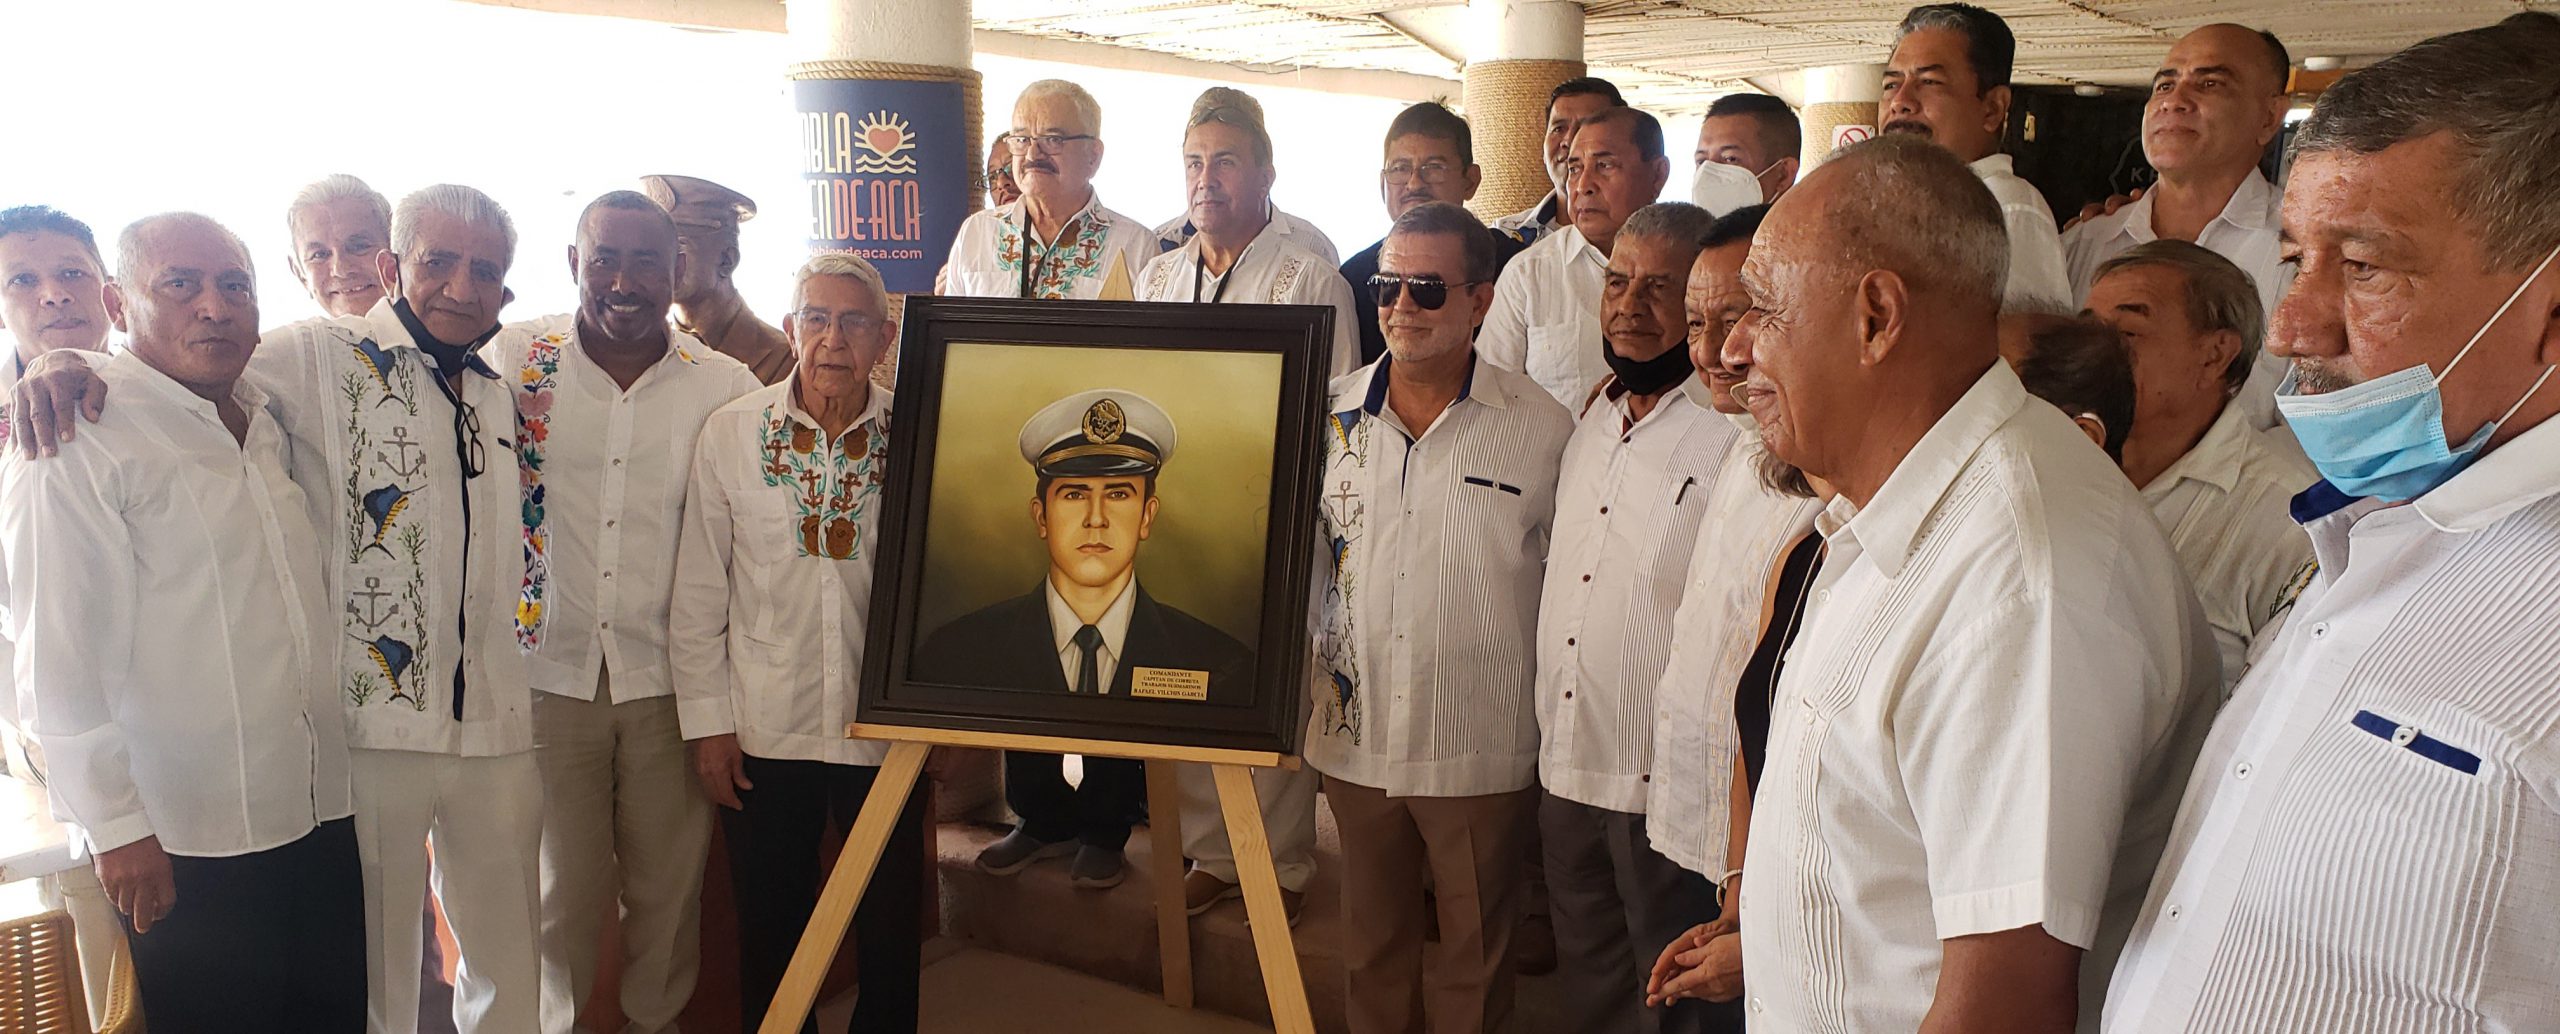 Buzos de la Marina realizan homenaje a fundador de la mejor escuela en Latinoamérica